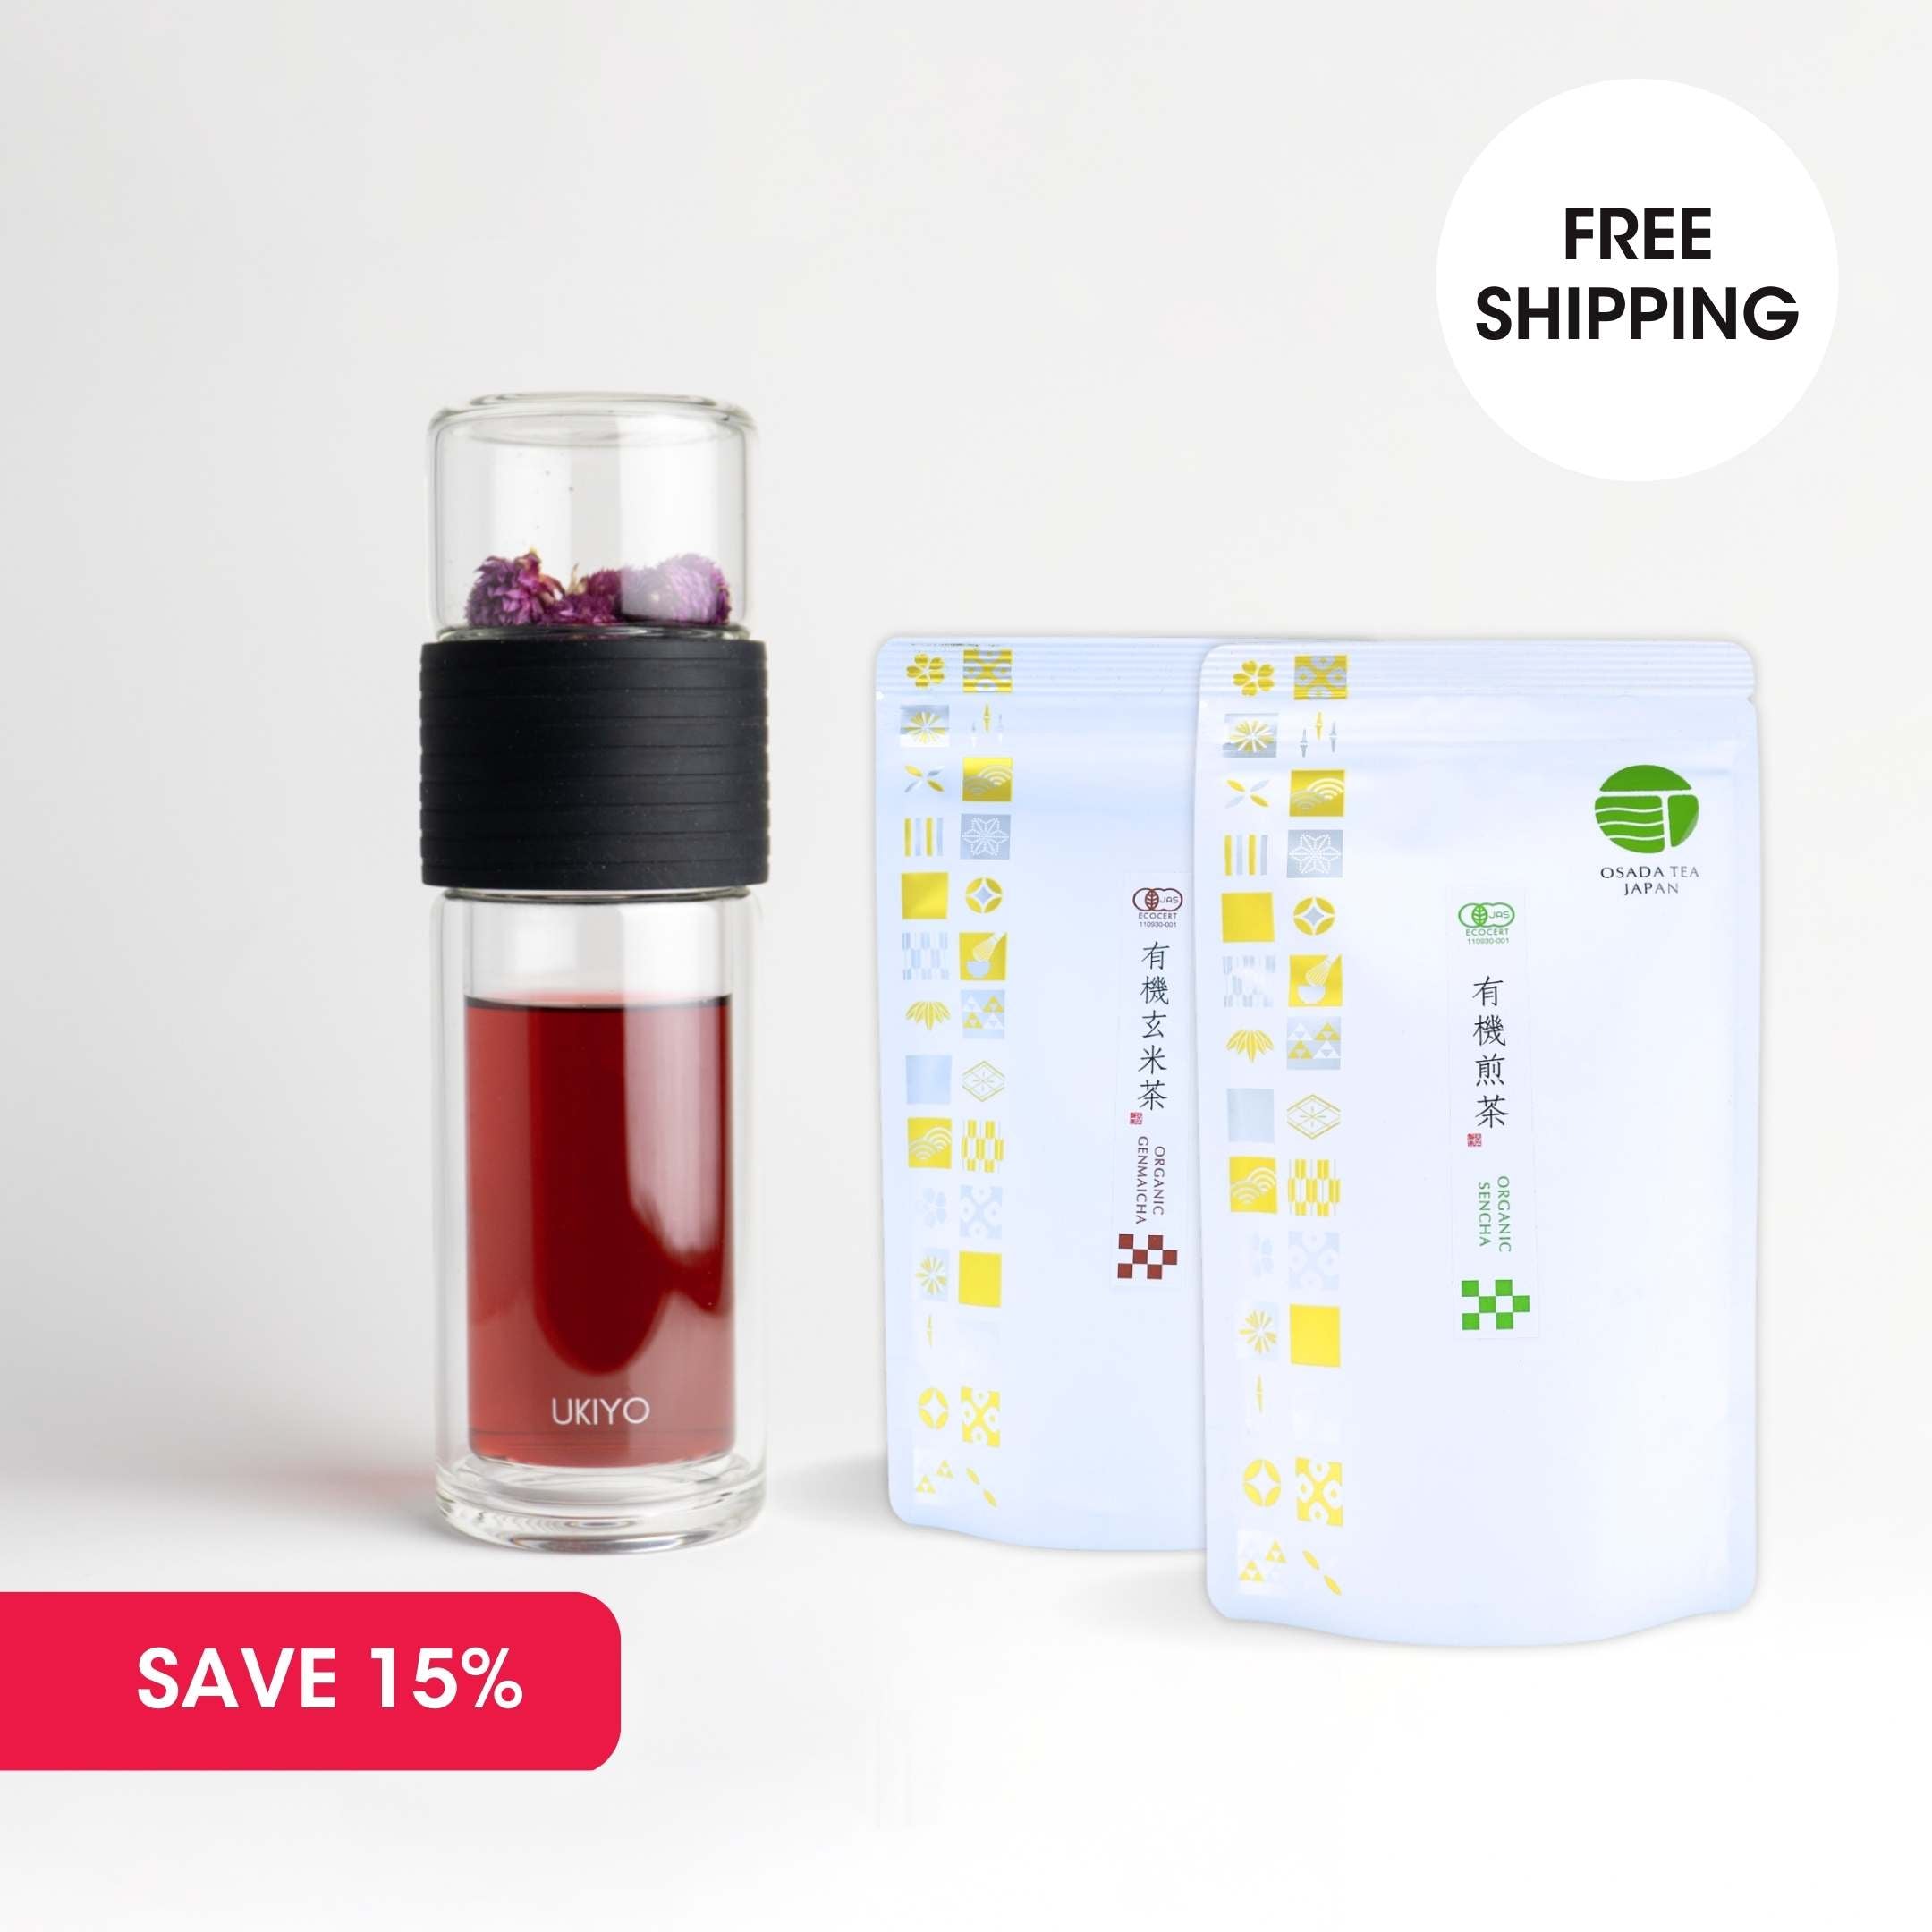 Premium Pairing Pack - Ukiyo Sense & 2 Organic Japanese Teas